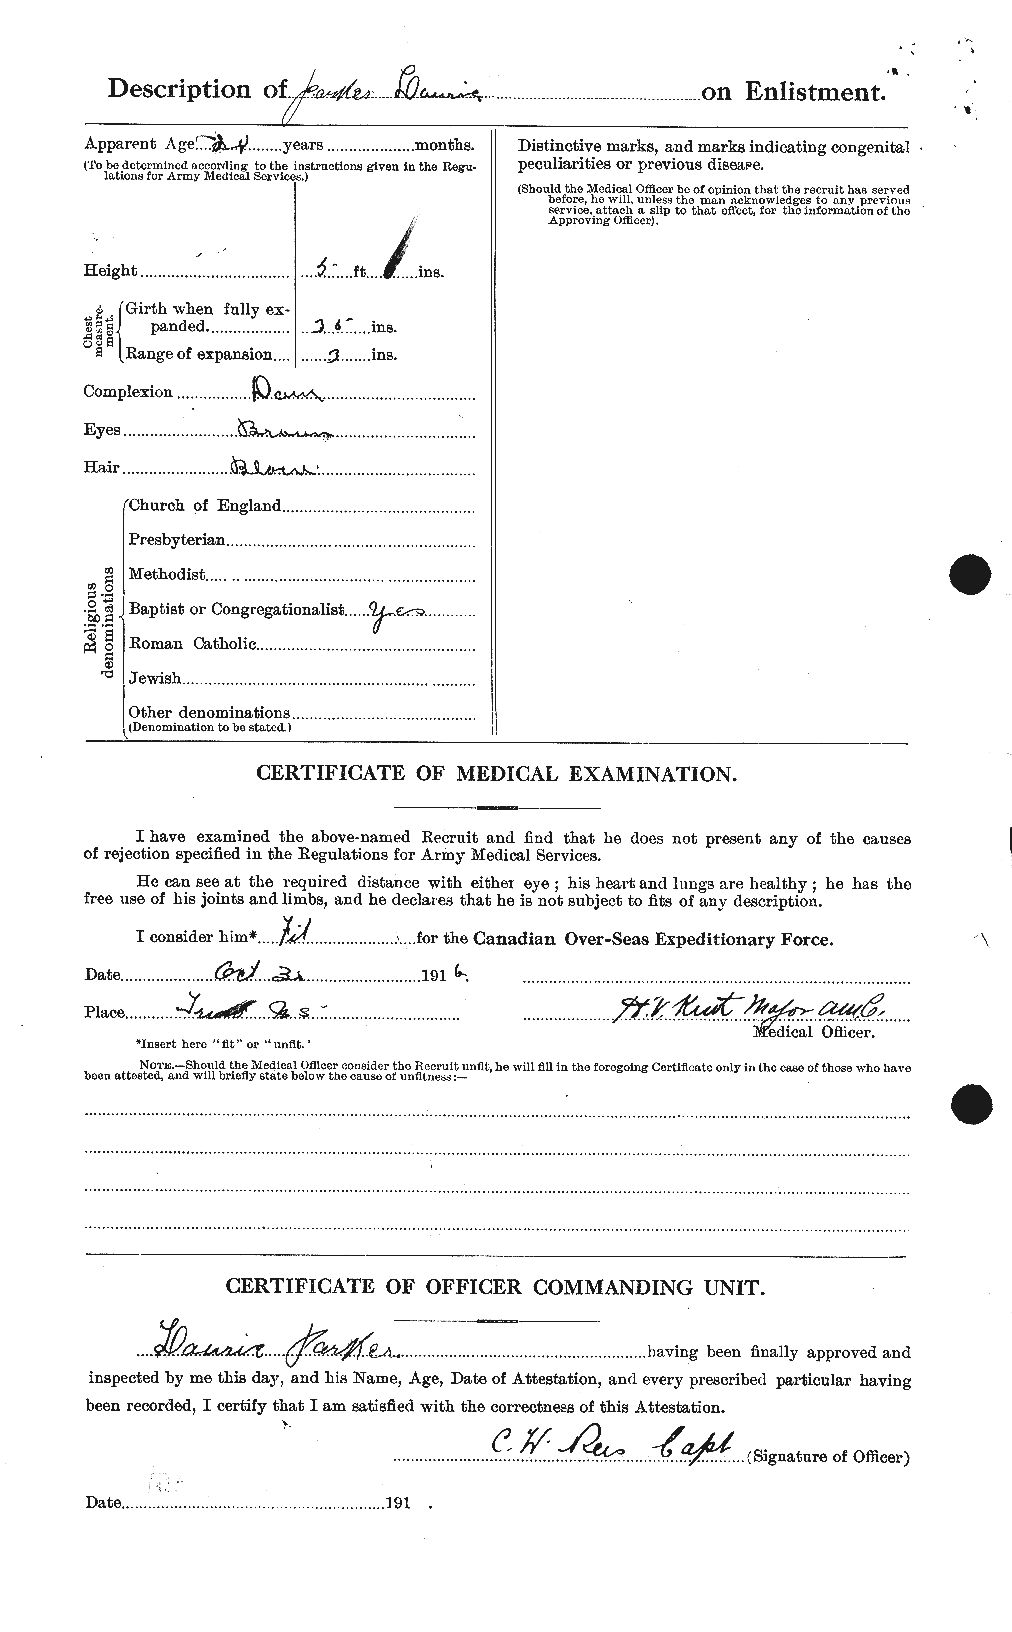 Dossiers du Personnel de la Première Guerre mondiale - CEC 565519b